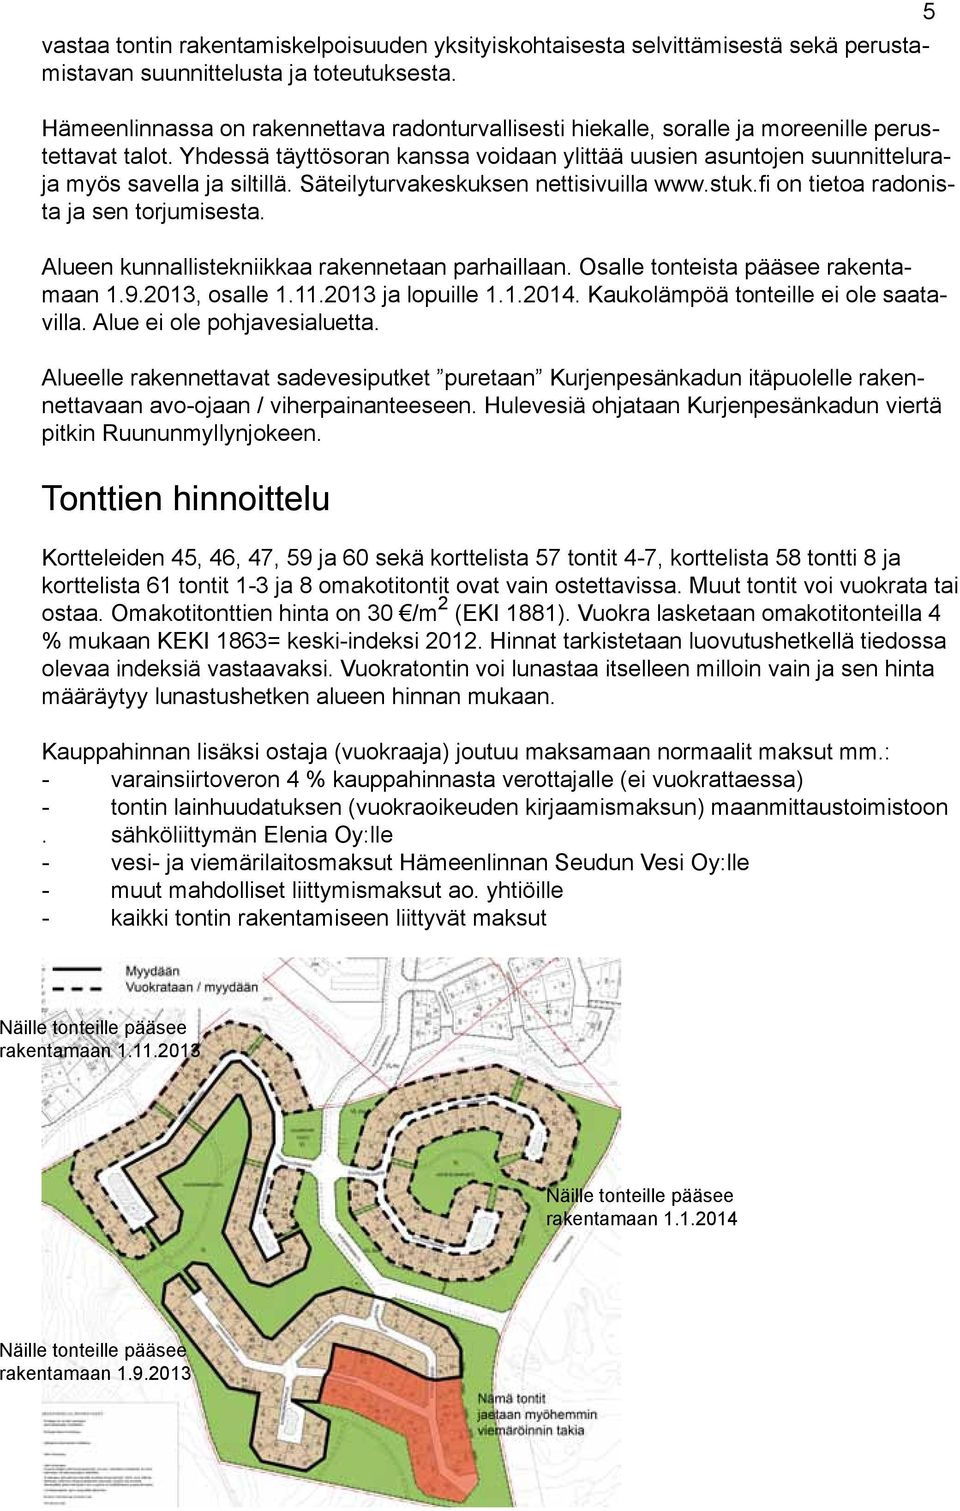 Yhdessä täyttösoran kanssa voidaan ylittää uusien asuntojen suunnitteluraja myös savella ja siltillä. Säteilyturvakeskuksen nettisivuilla www.stuk.fi on tietoa radonista ja sen torjumisesta.